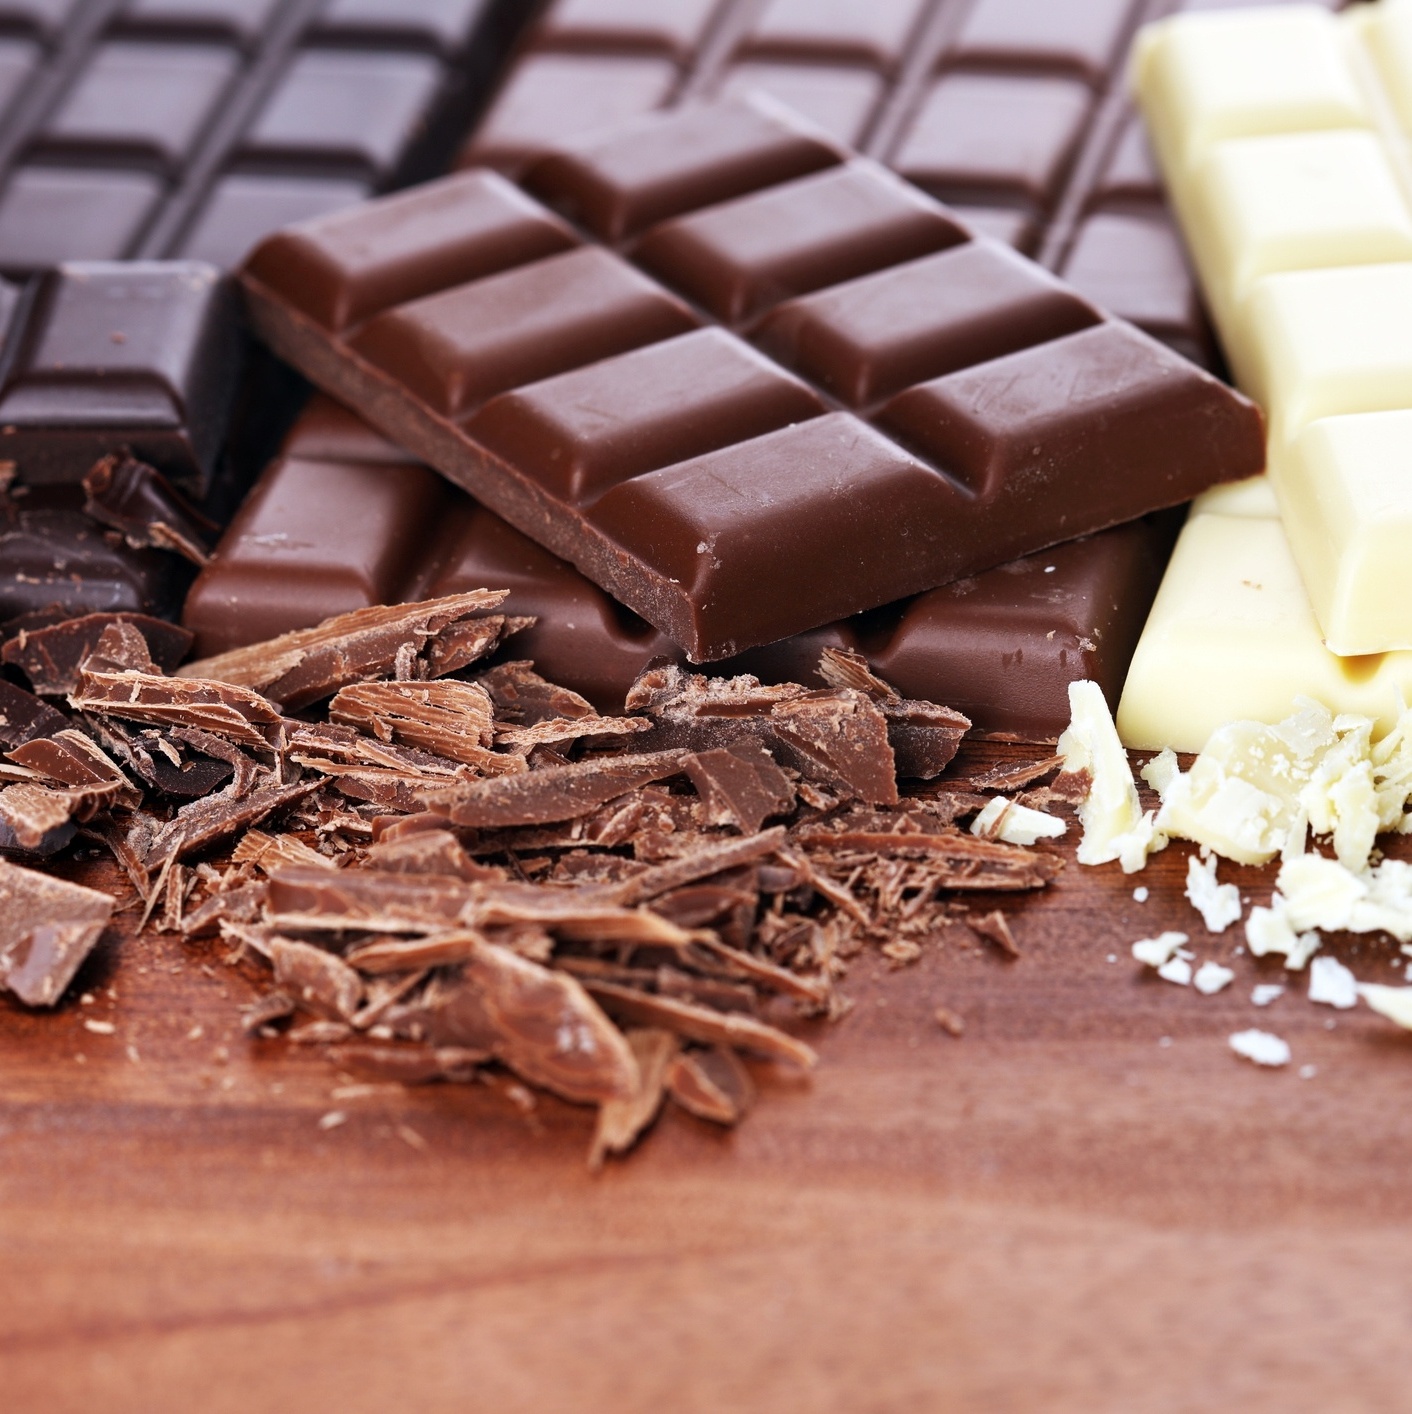 Chocolate branco é chocolate de verdade? Especialistas respondem - Estadão